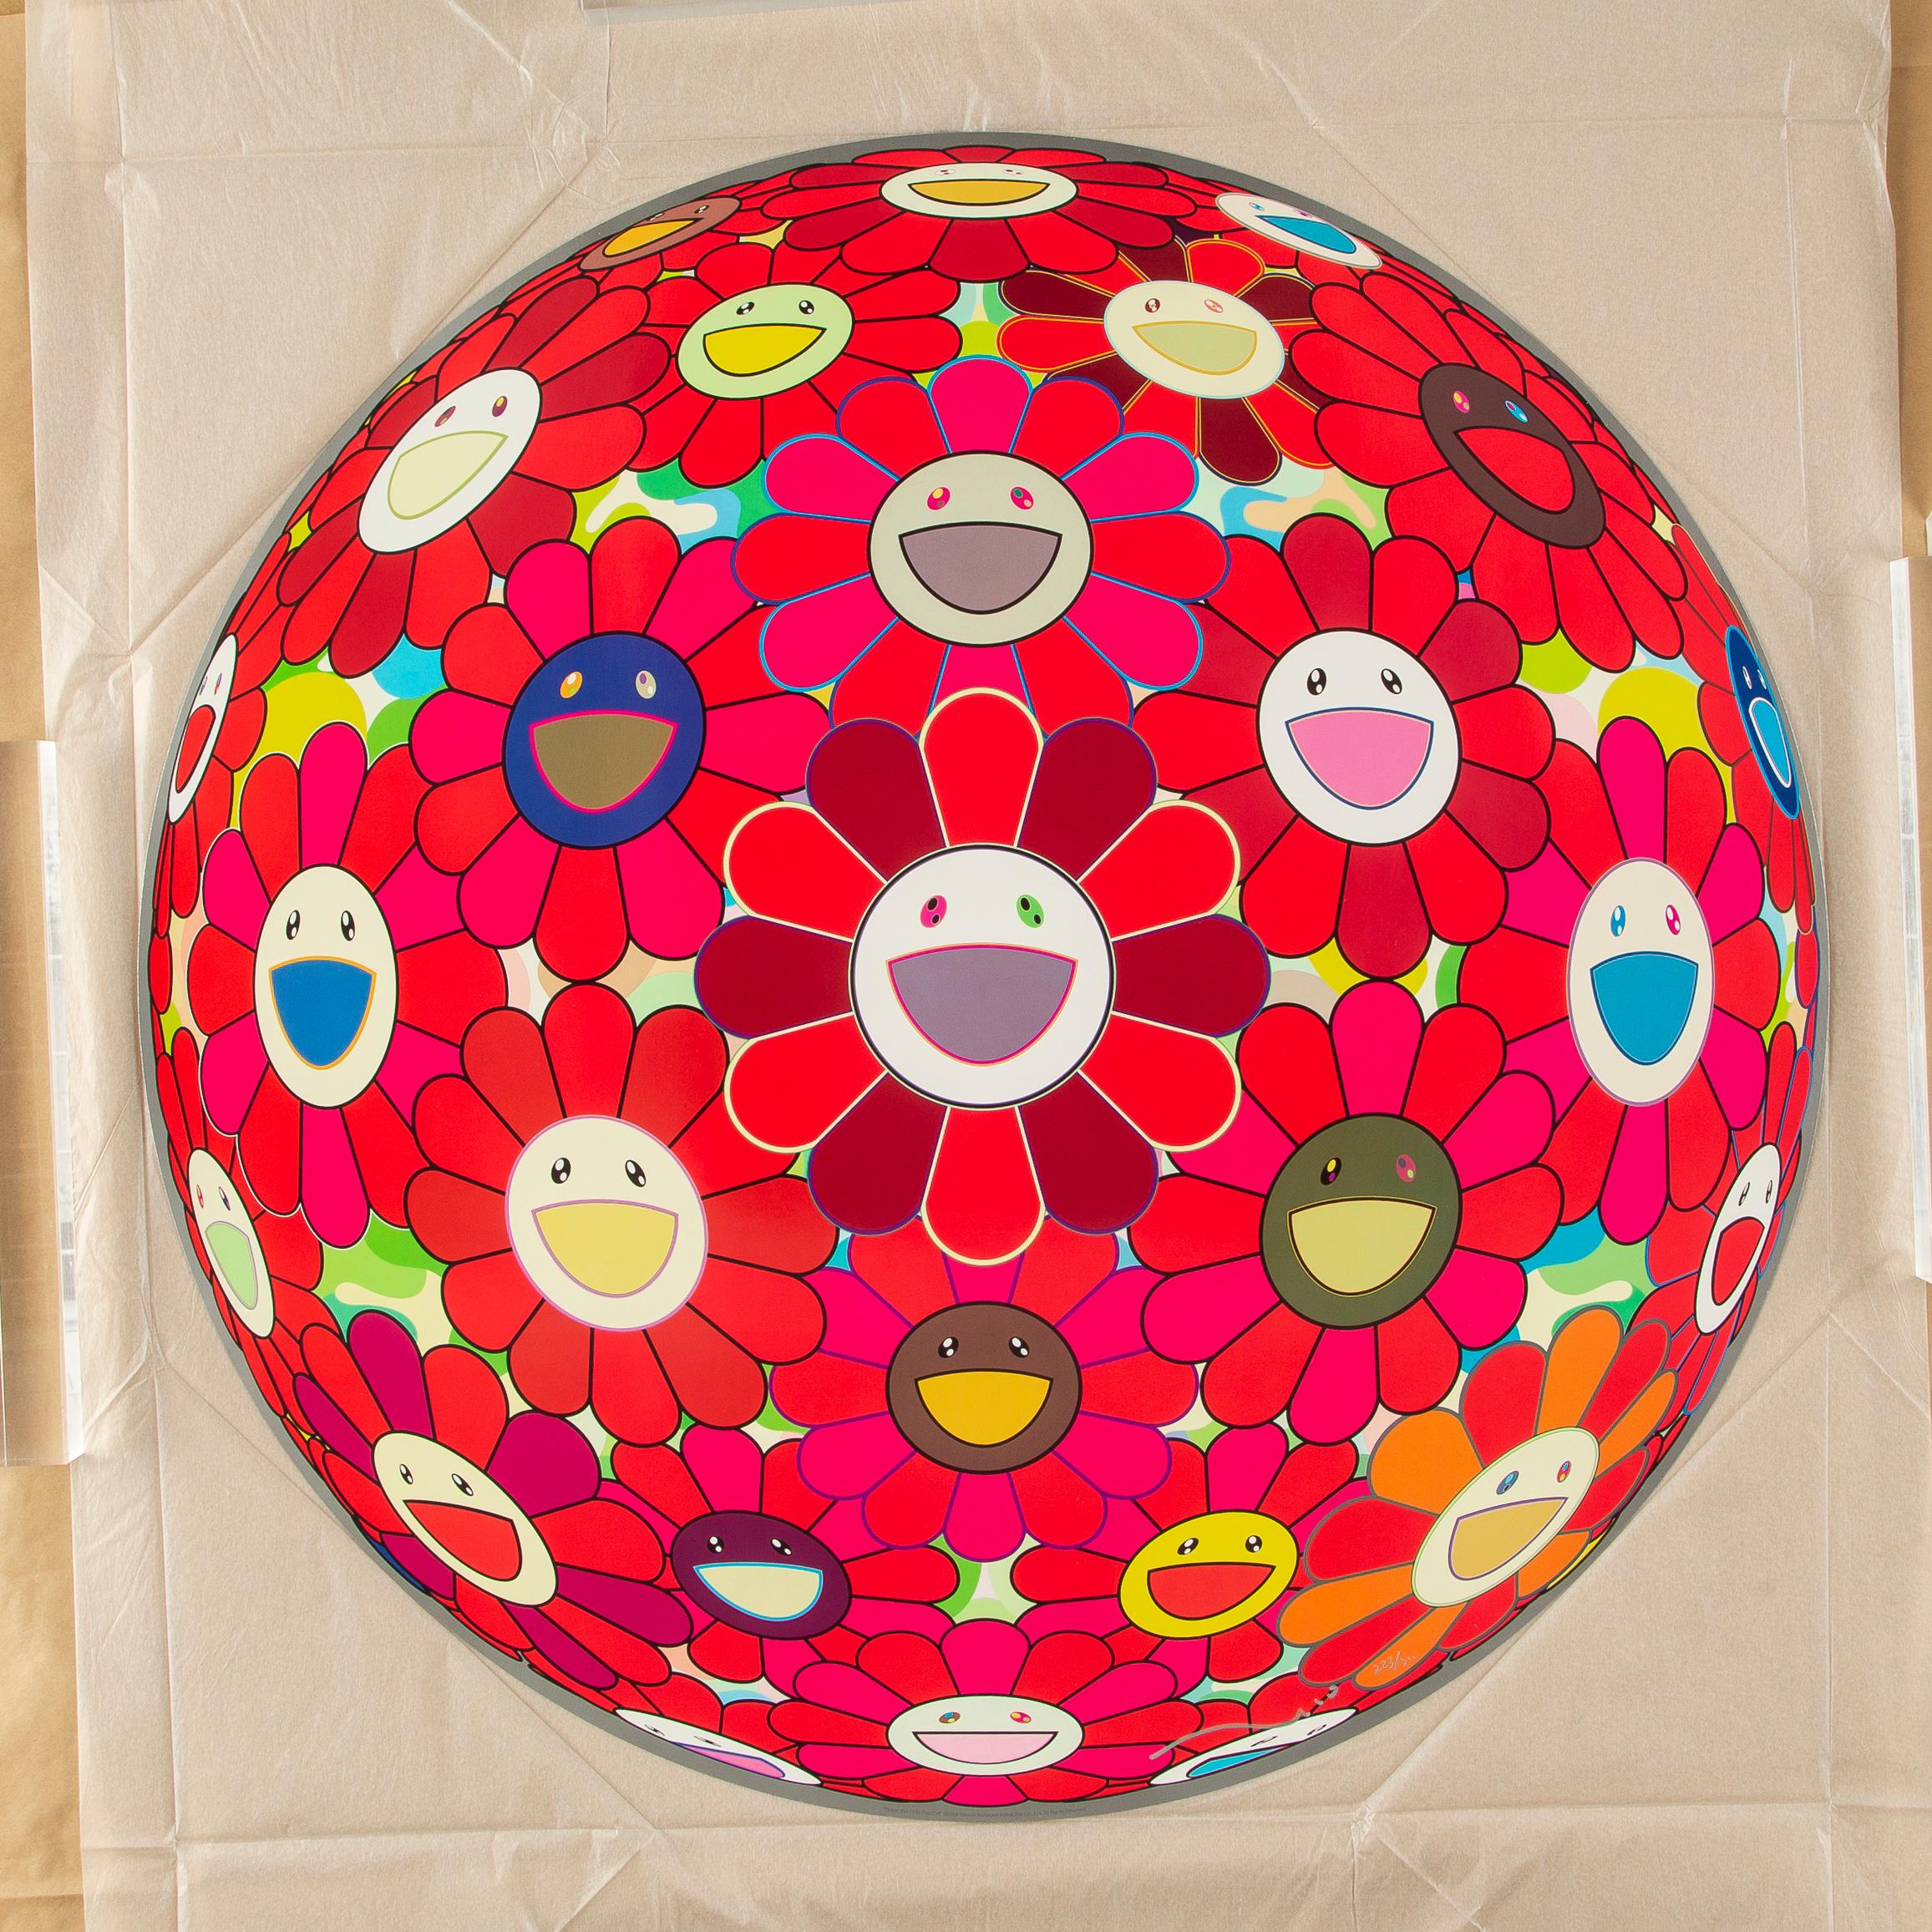 Blumenball (3-D) Red Cliff Limitierte Auflage (Druck) von Murakami signiert, nummeriert – Print von Takashi Murakami